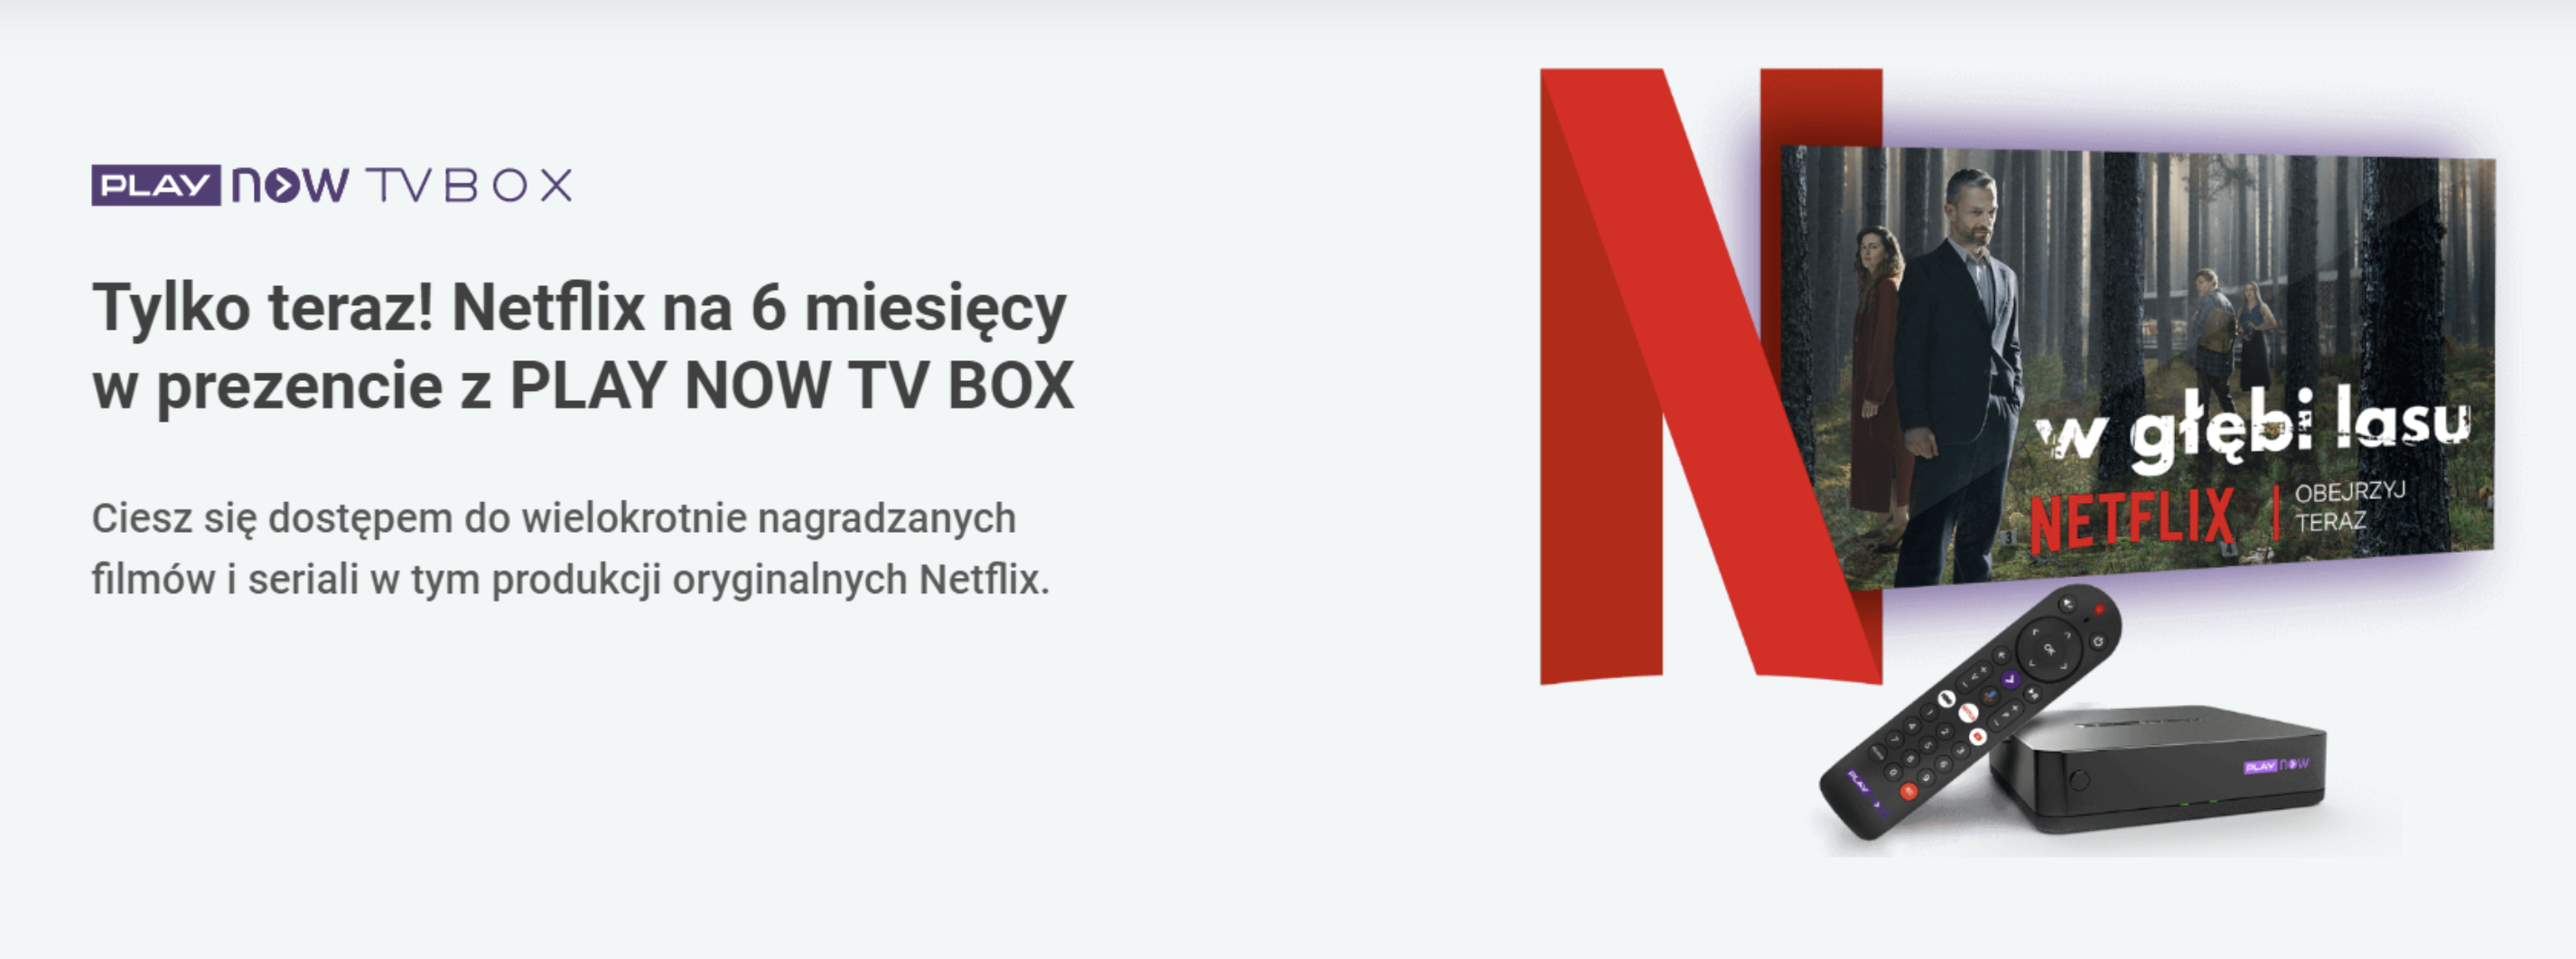 Netflix na pół roku w prezencie z ofertą PLAY NOW TV BOX